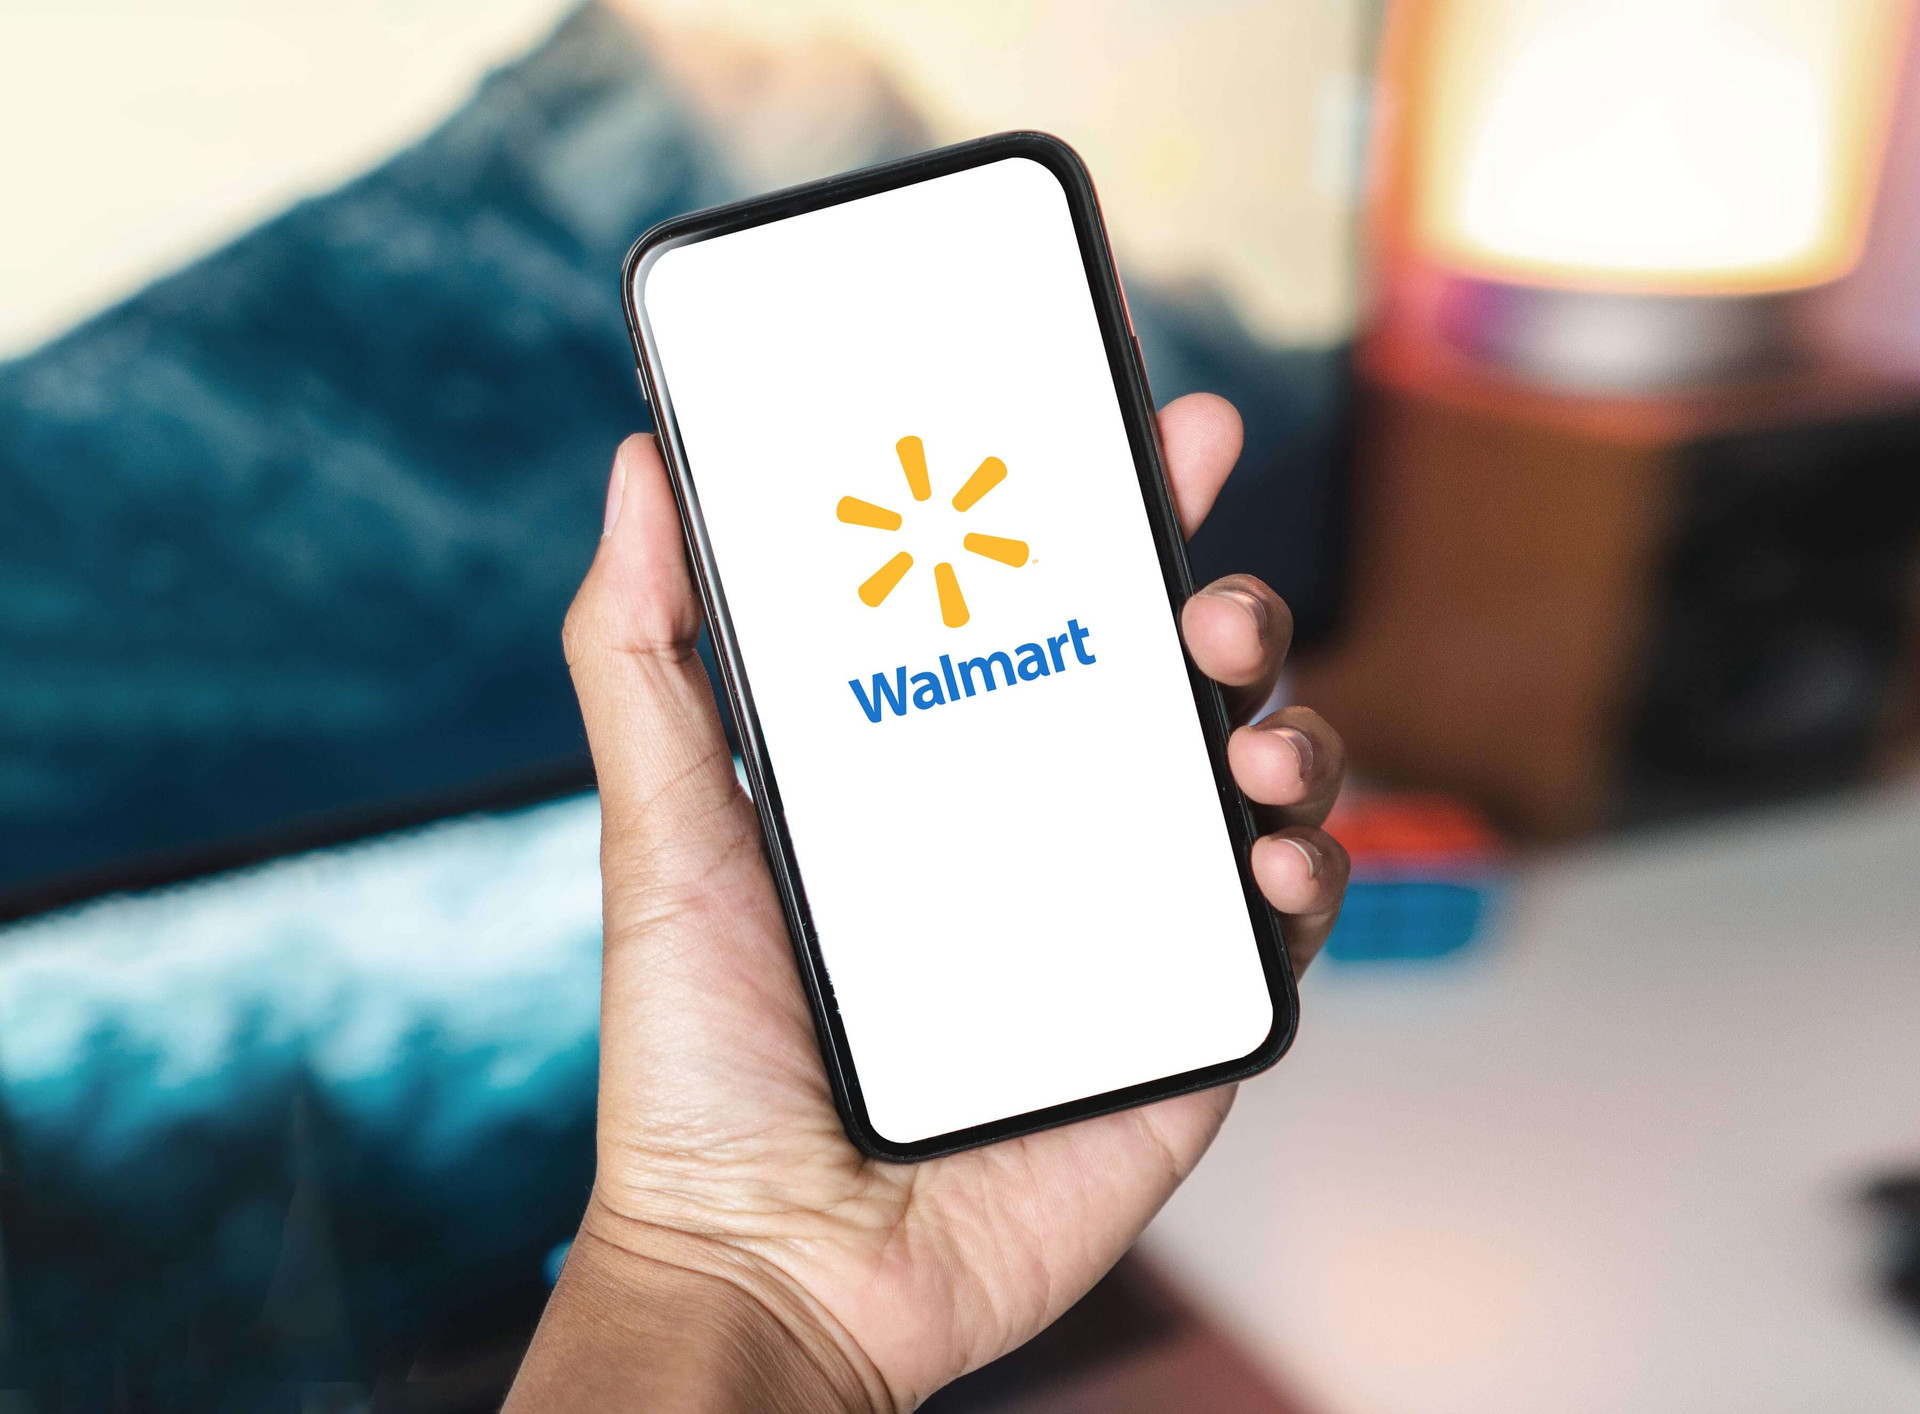 Walmart tung tính năng mới, cho phép khách hàng ‘đi chợ’ bằng tin nhắn - Ảnh 2.